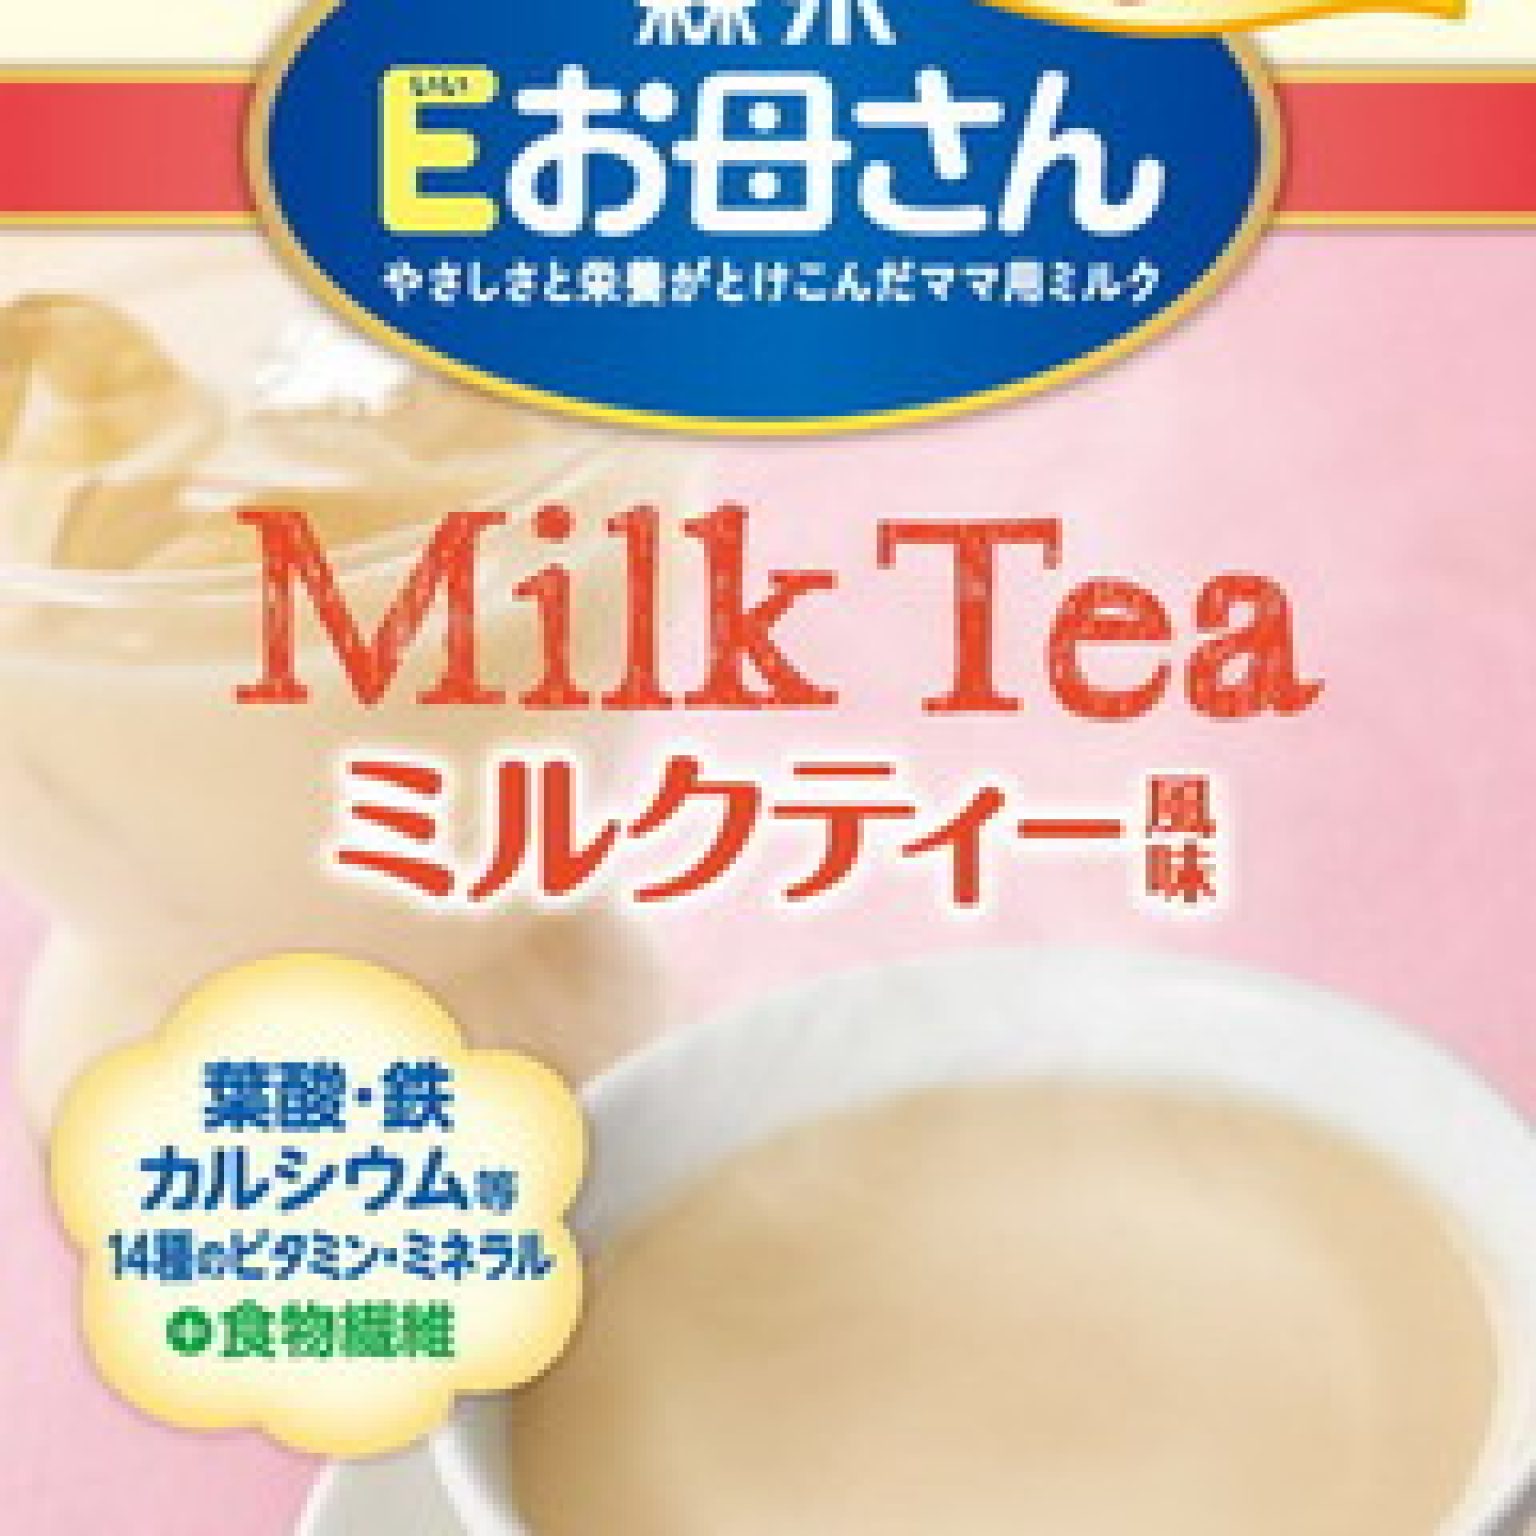 Sữa bầu Morinaga Nhật Bản - vị Trà sữa - mẫu mới 2015